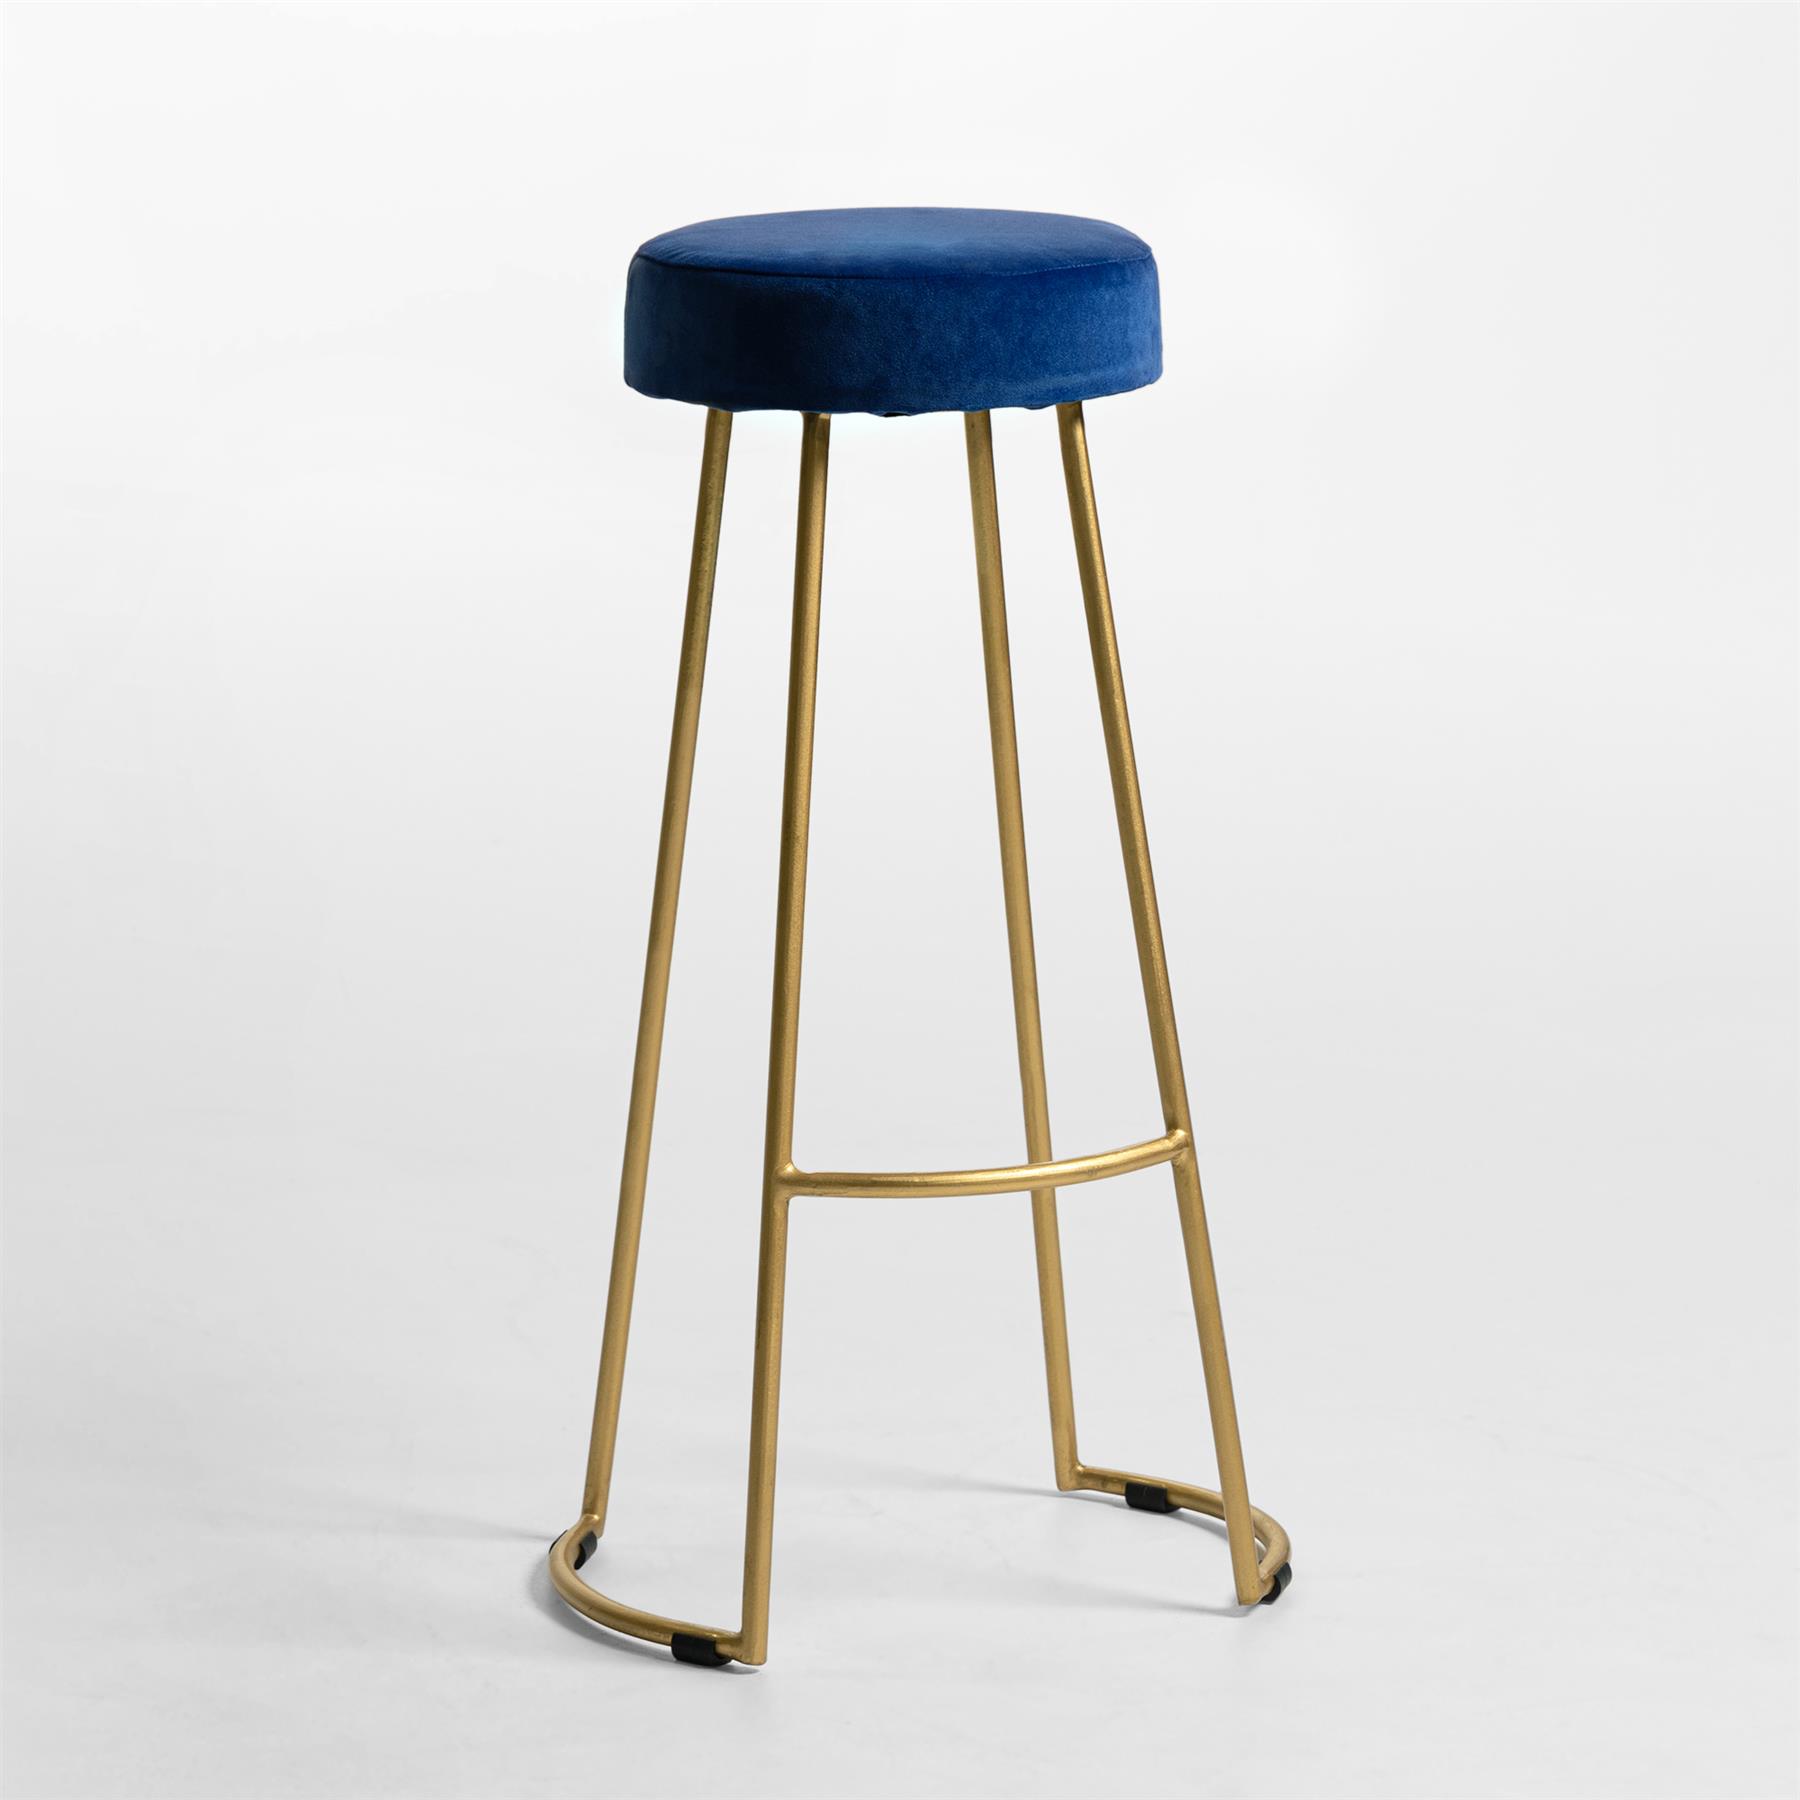 Tapas Bar Stool - Azure Blue Velvet Round Seat - Gold Base - 78cm